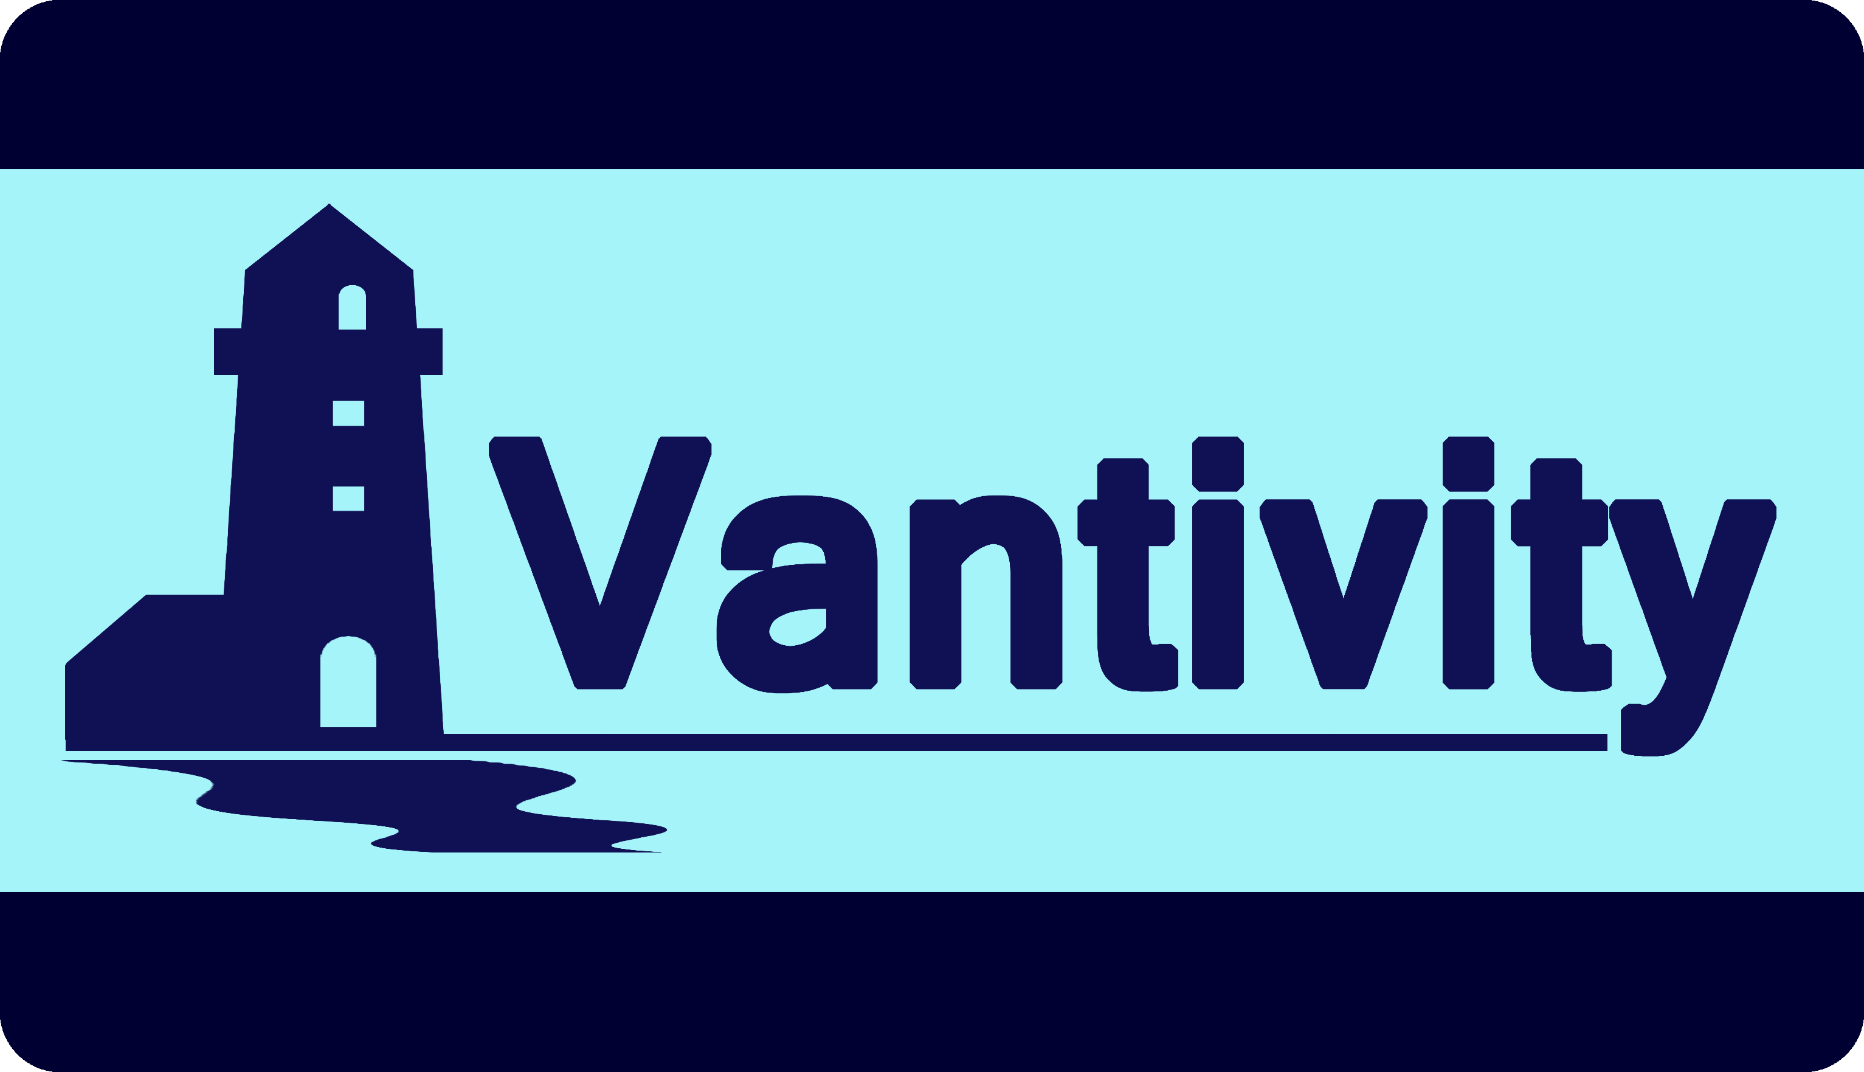 Vantivity